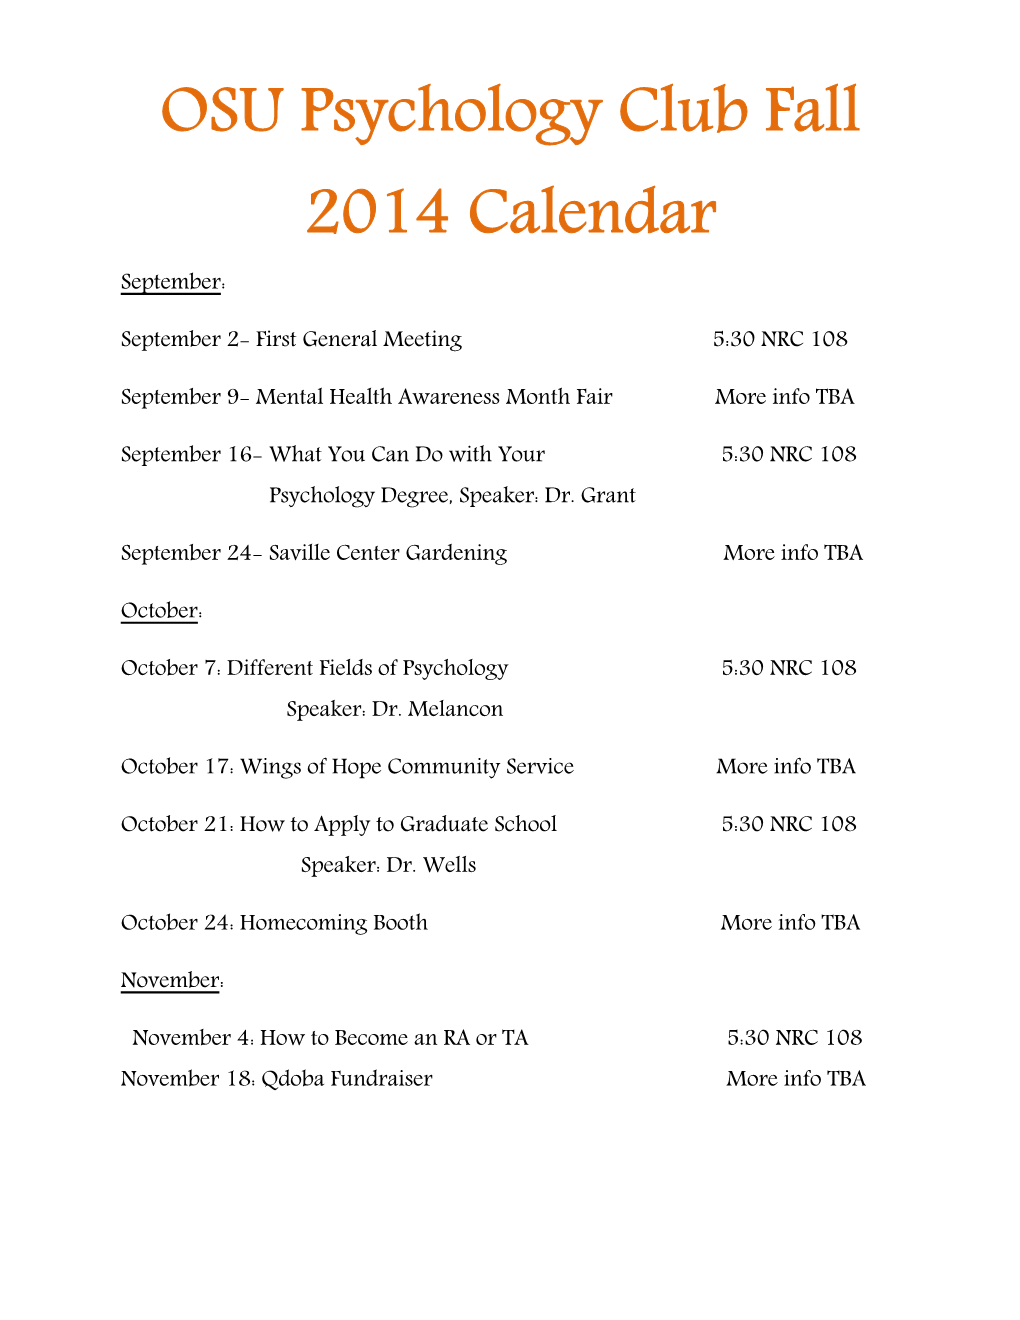 OSU Psychology Club Fall 2014 Calendar